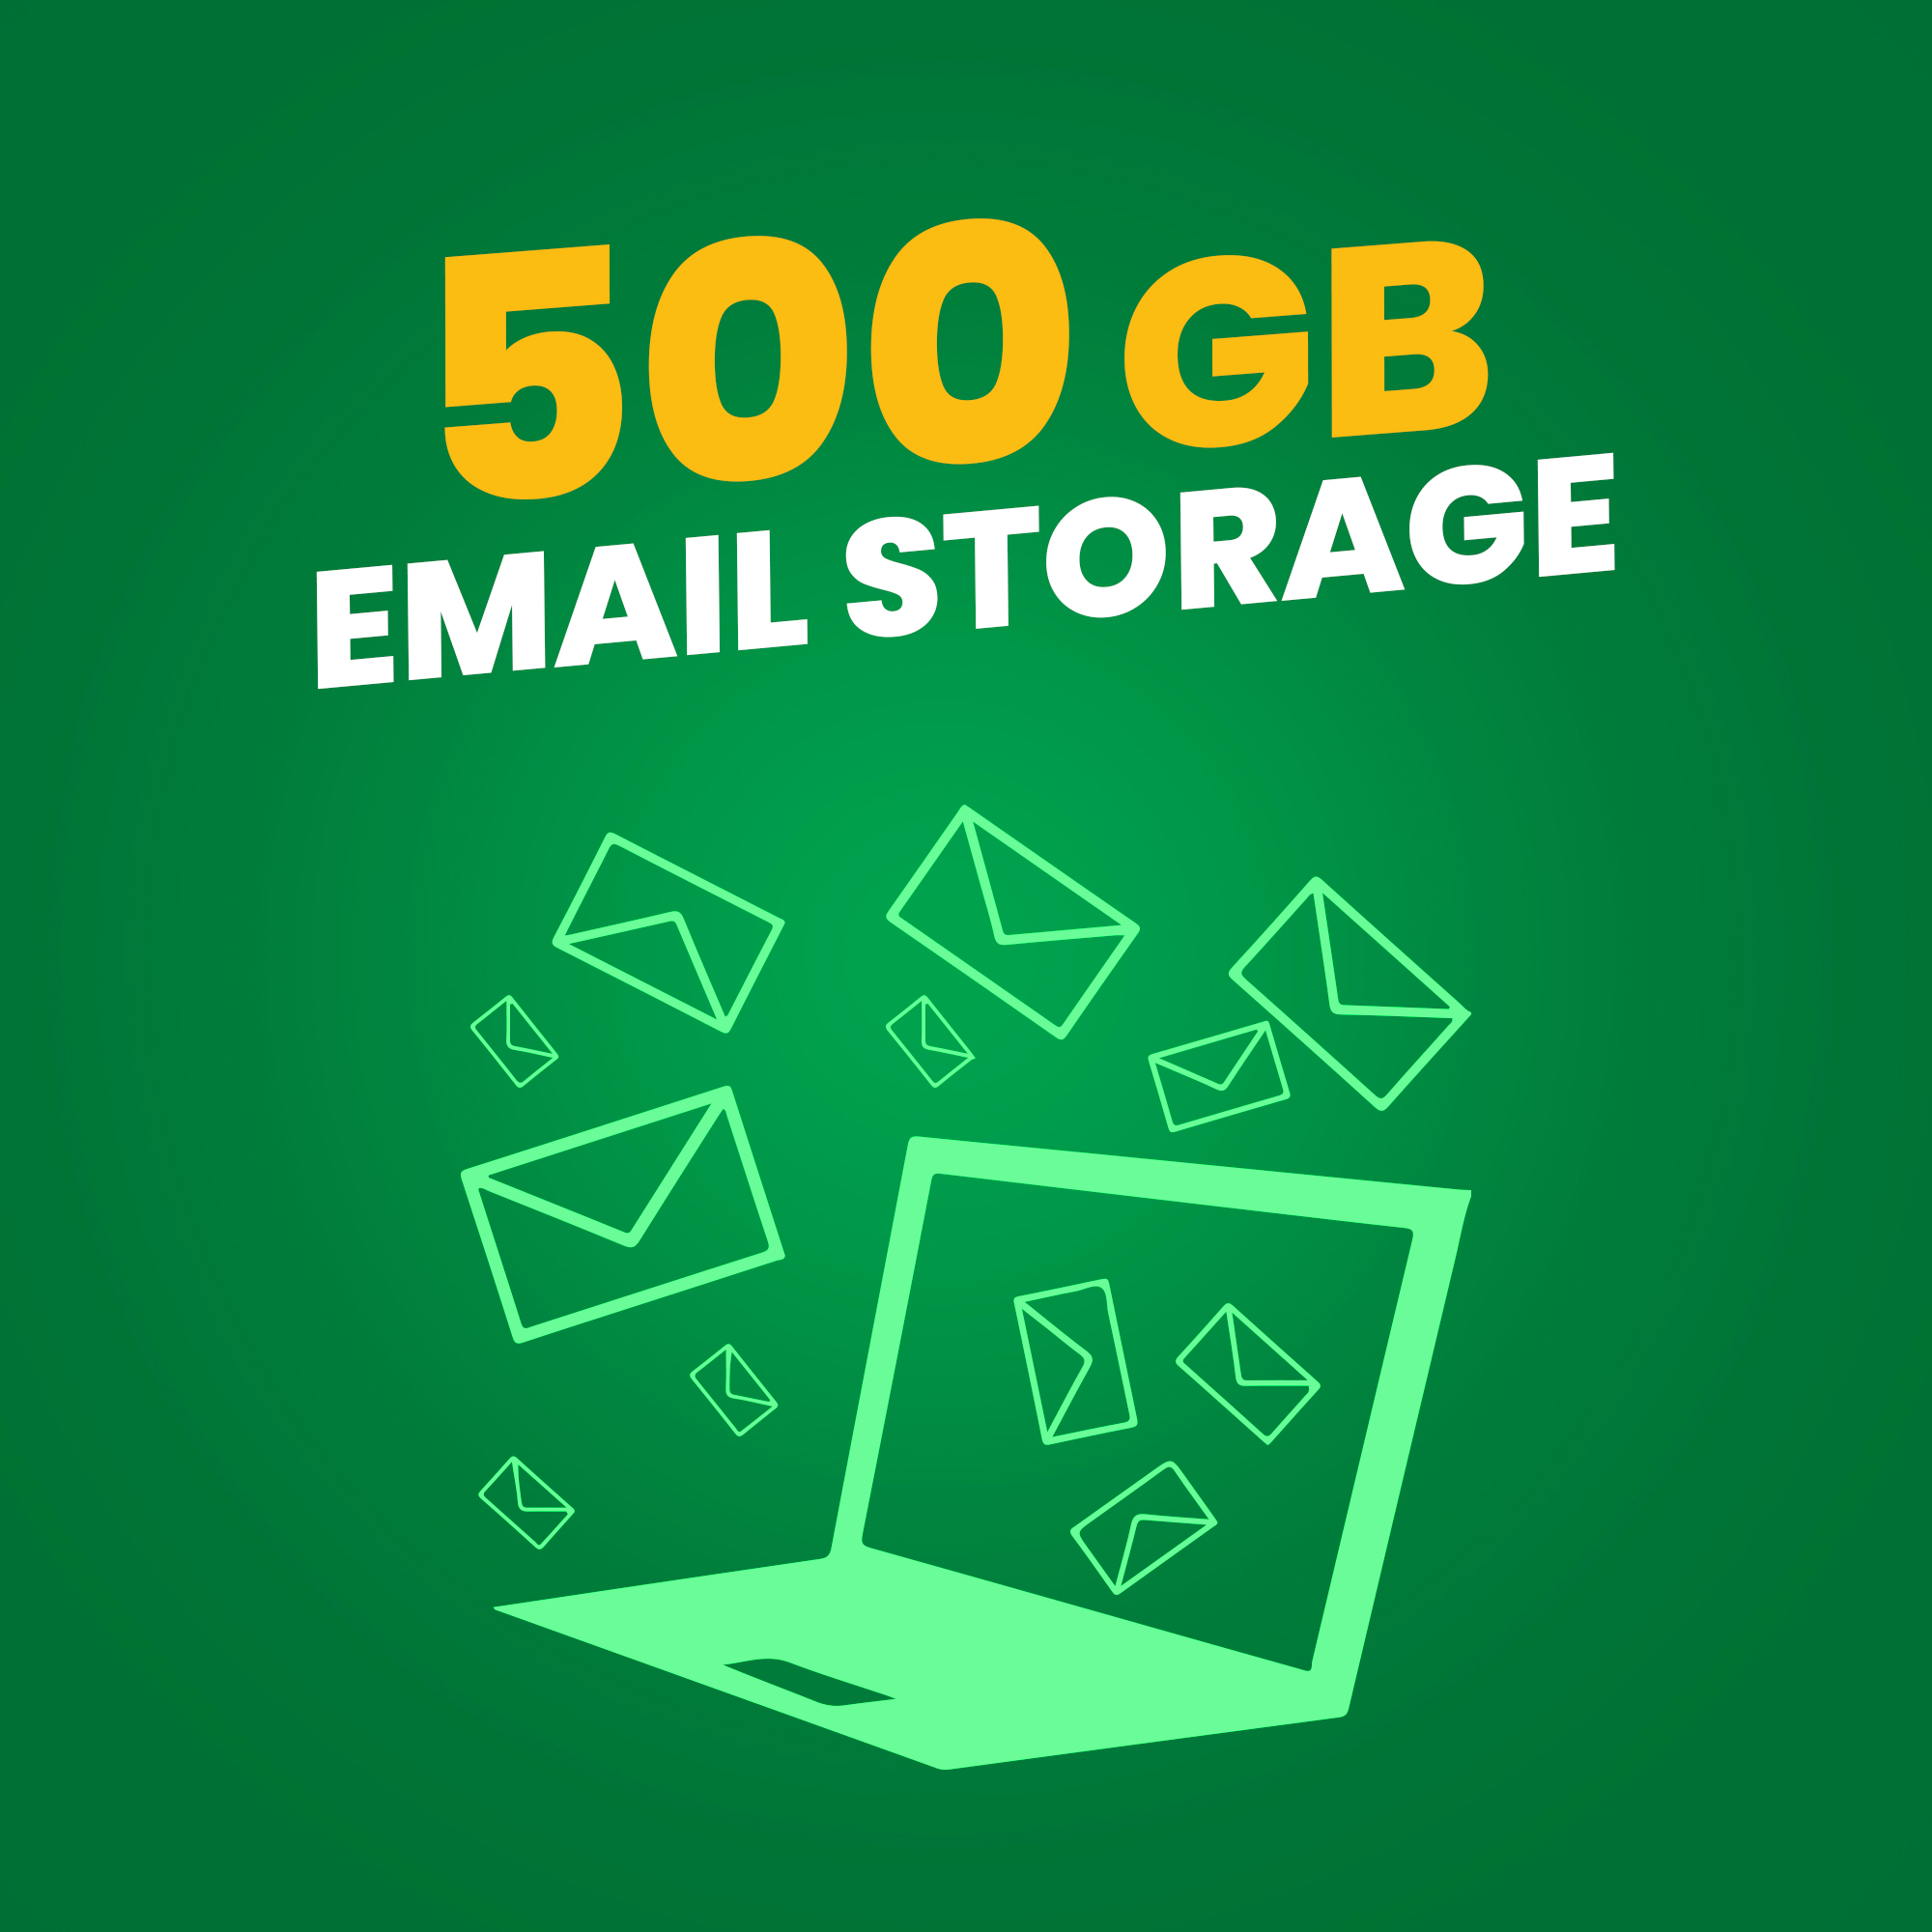 plxus cloud email storage